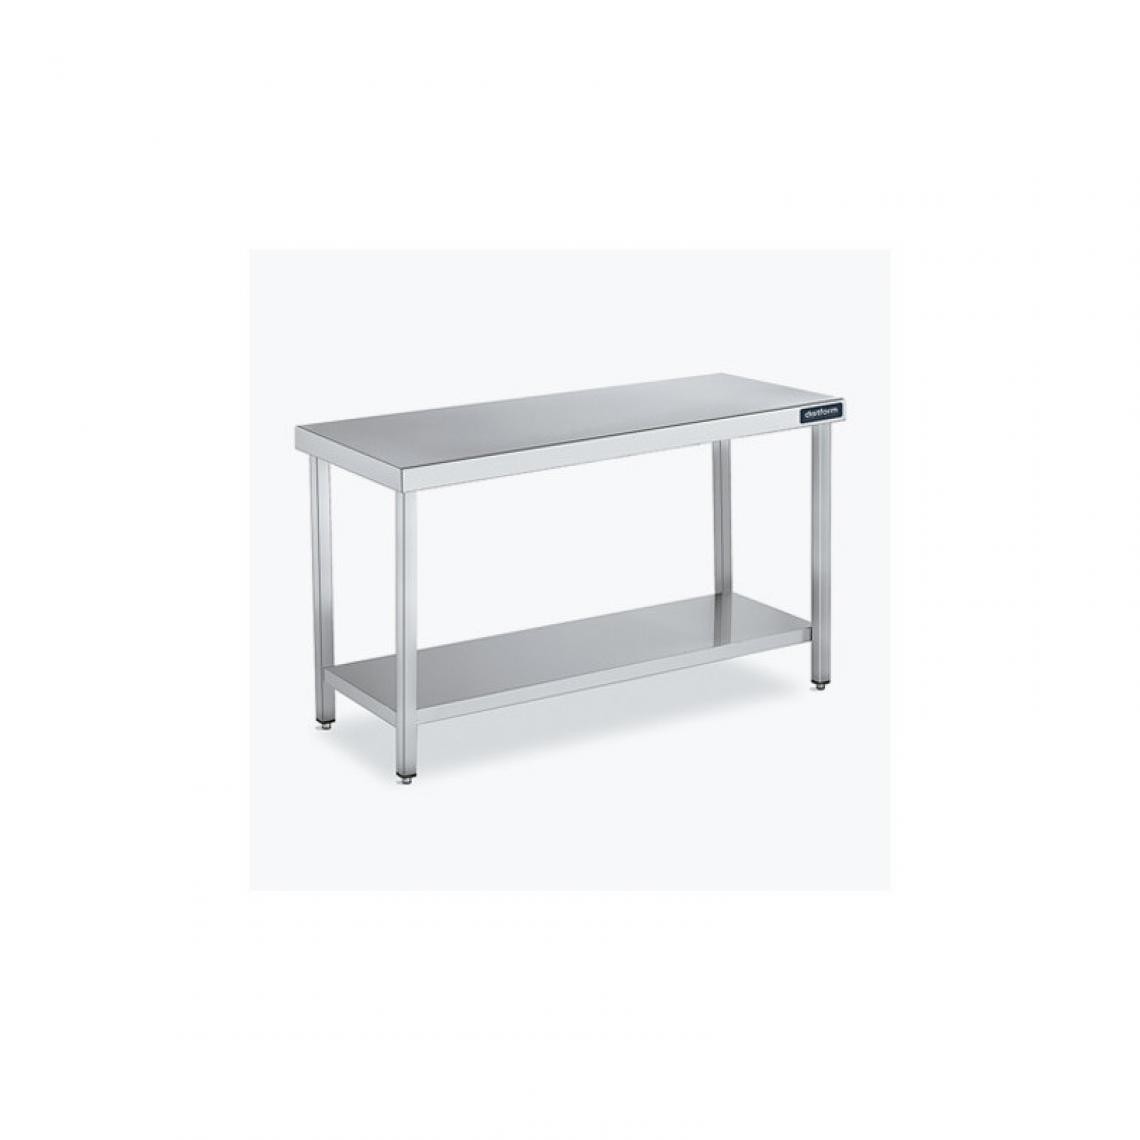 DISTFORM - Table Central 600x550 avec Étagère - Distform - Inox 18/101400x550x850mm - Tables à manger